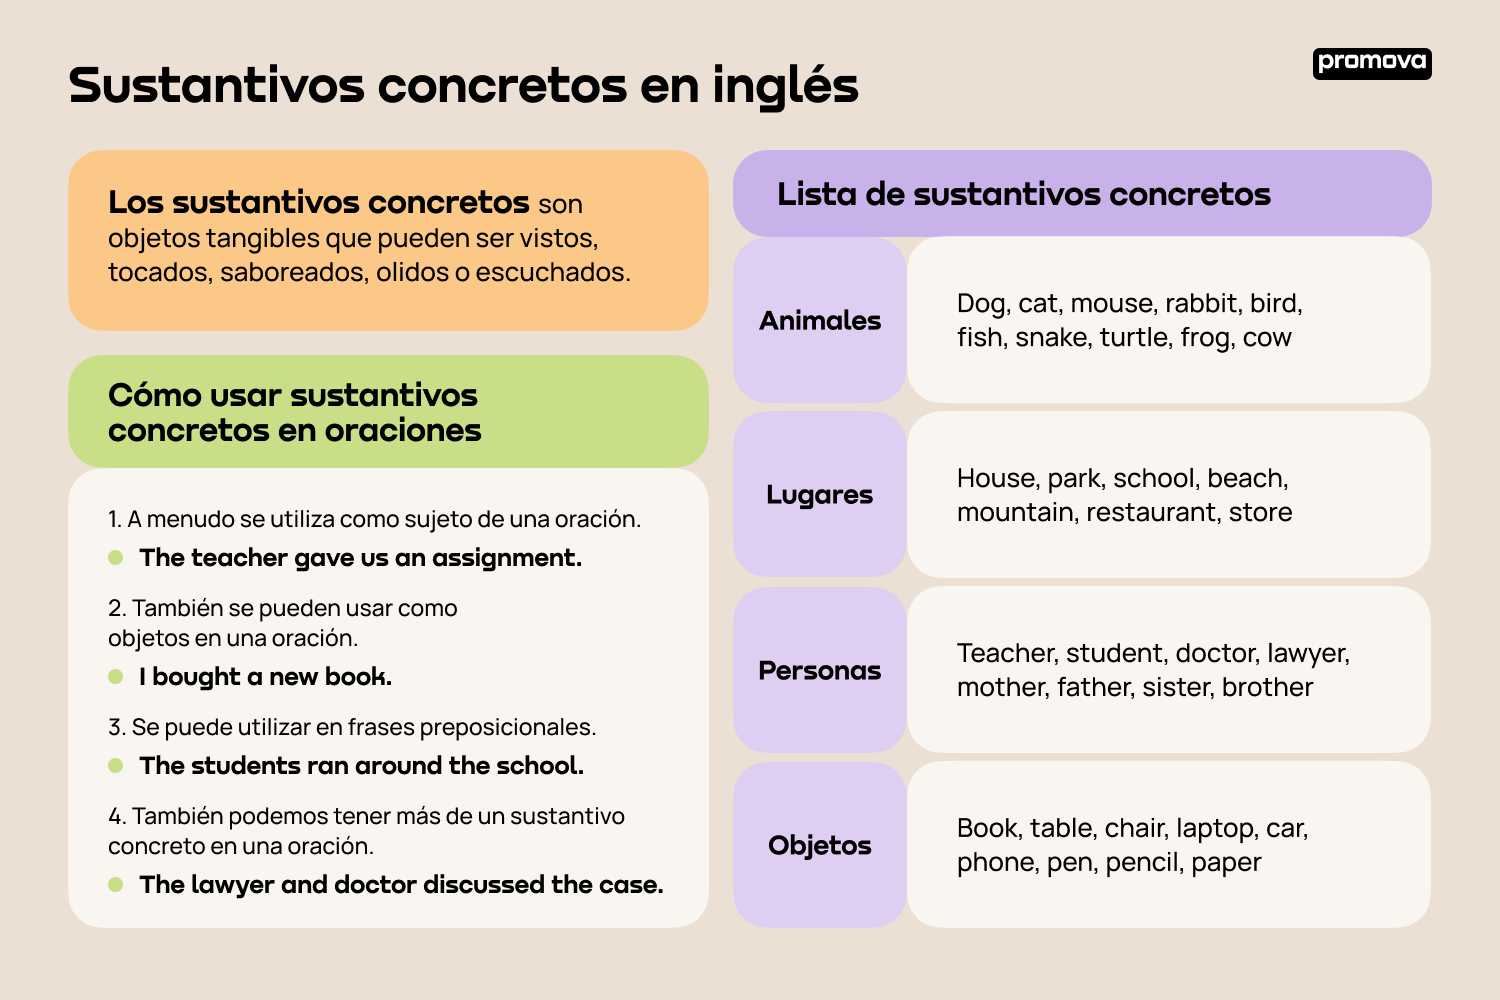 Descubre los sustantivos concretos en inglés: Conceptos y aplicaciones